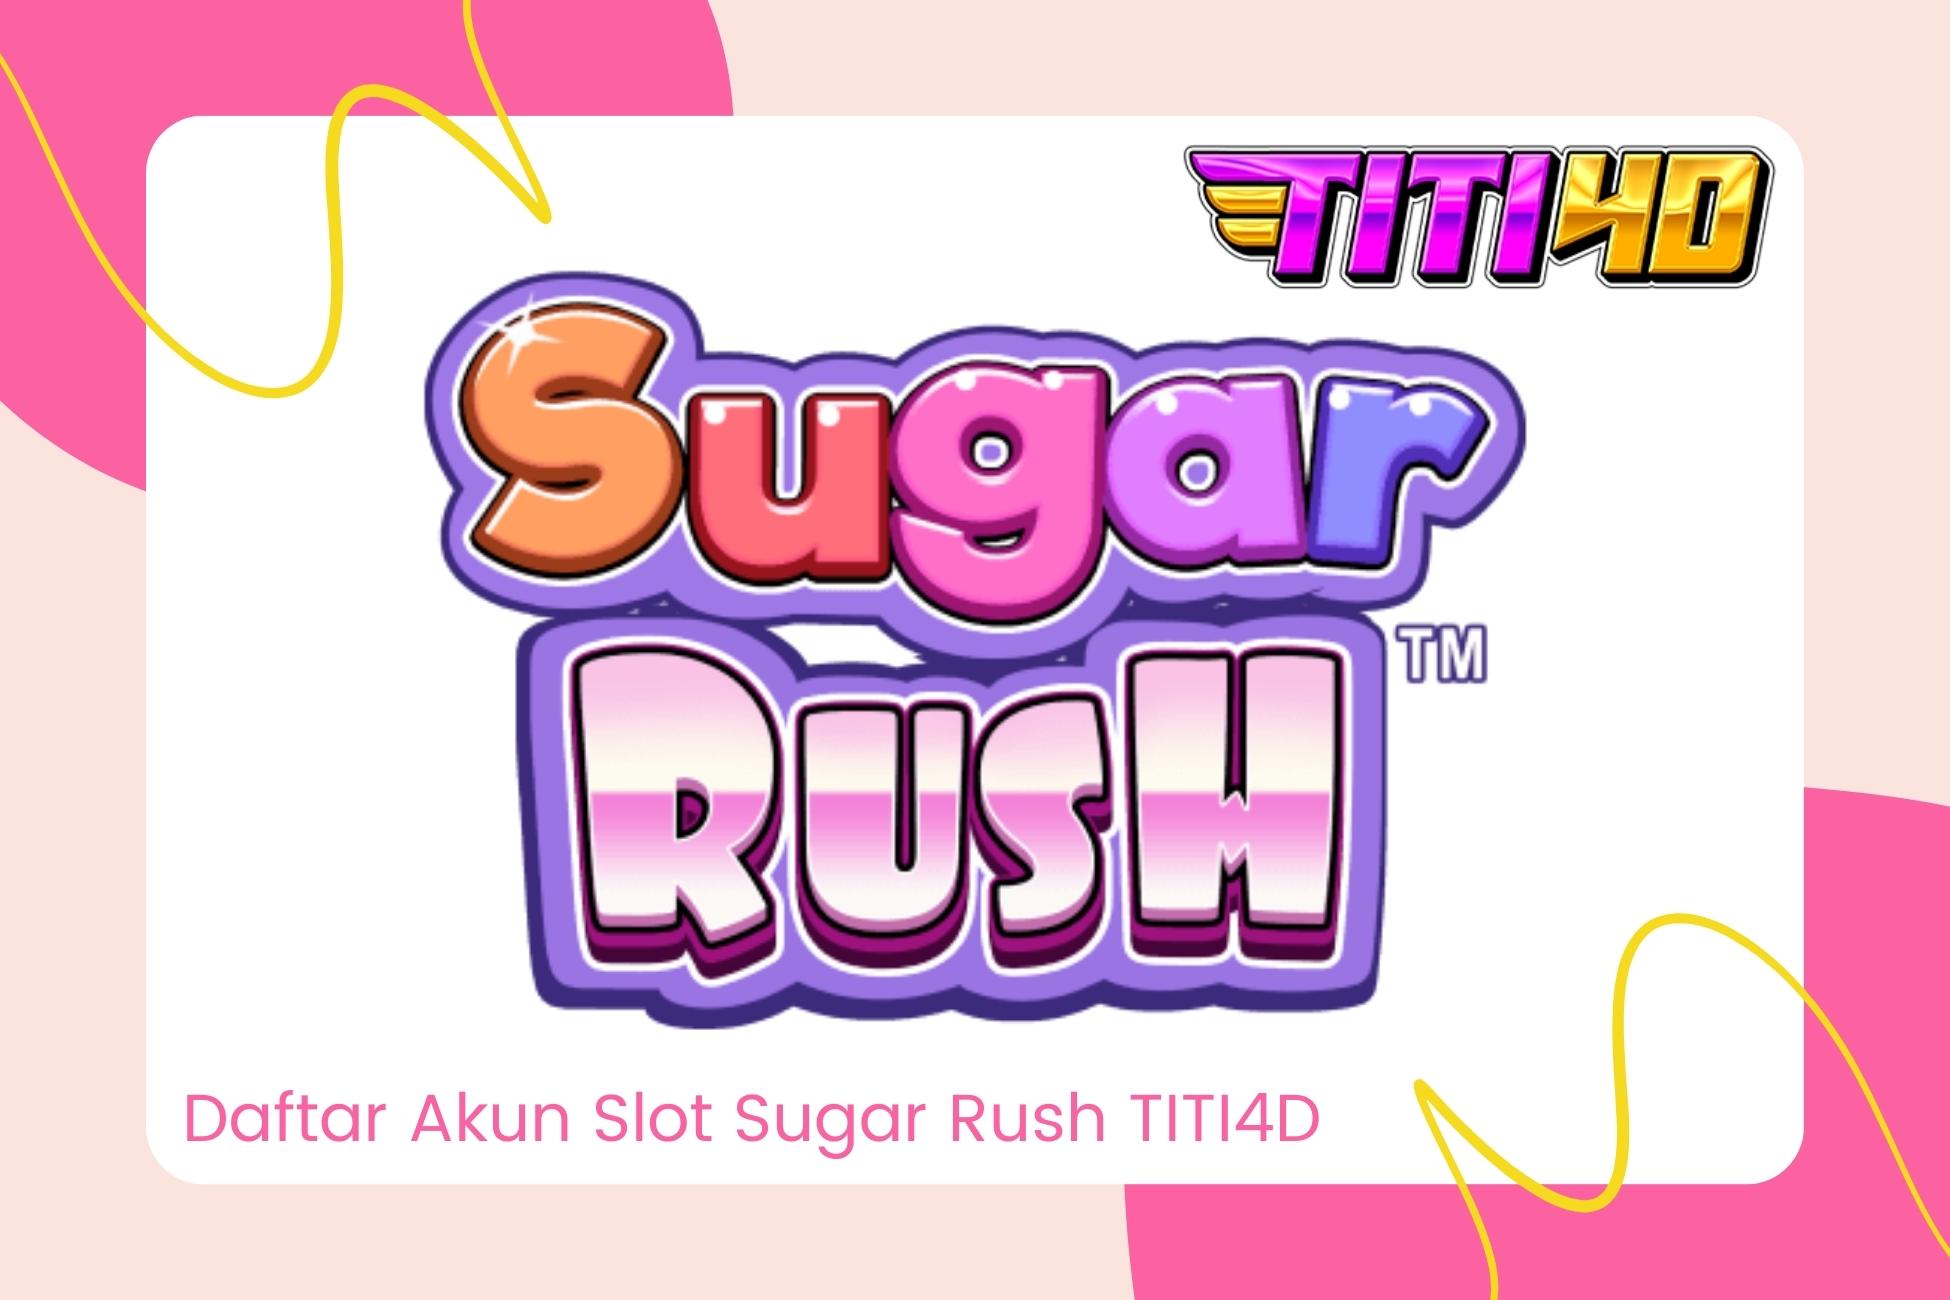 Daftar Akun Slot Sugar Rush TITI4D